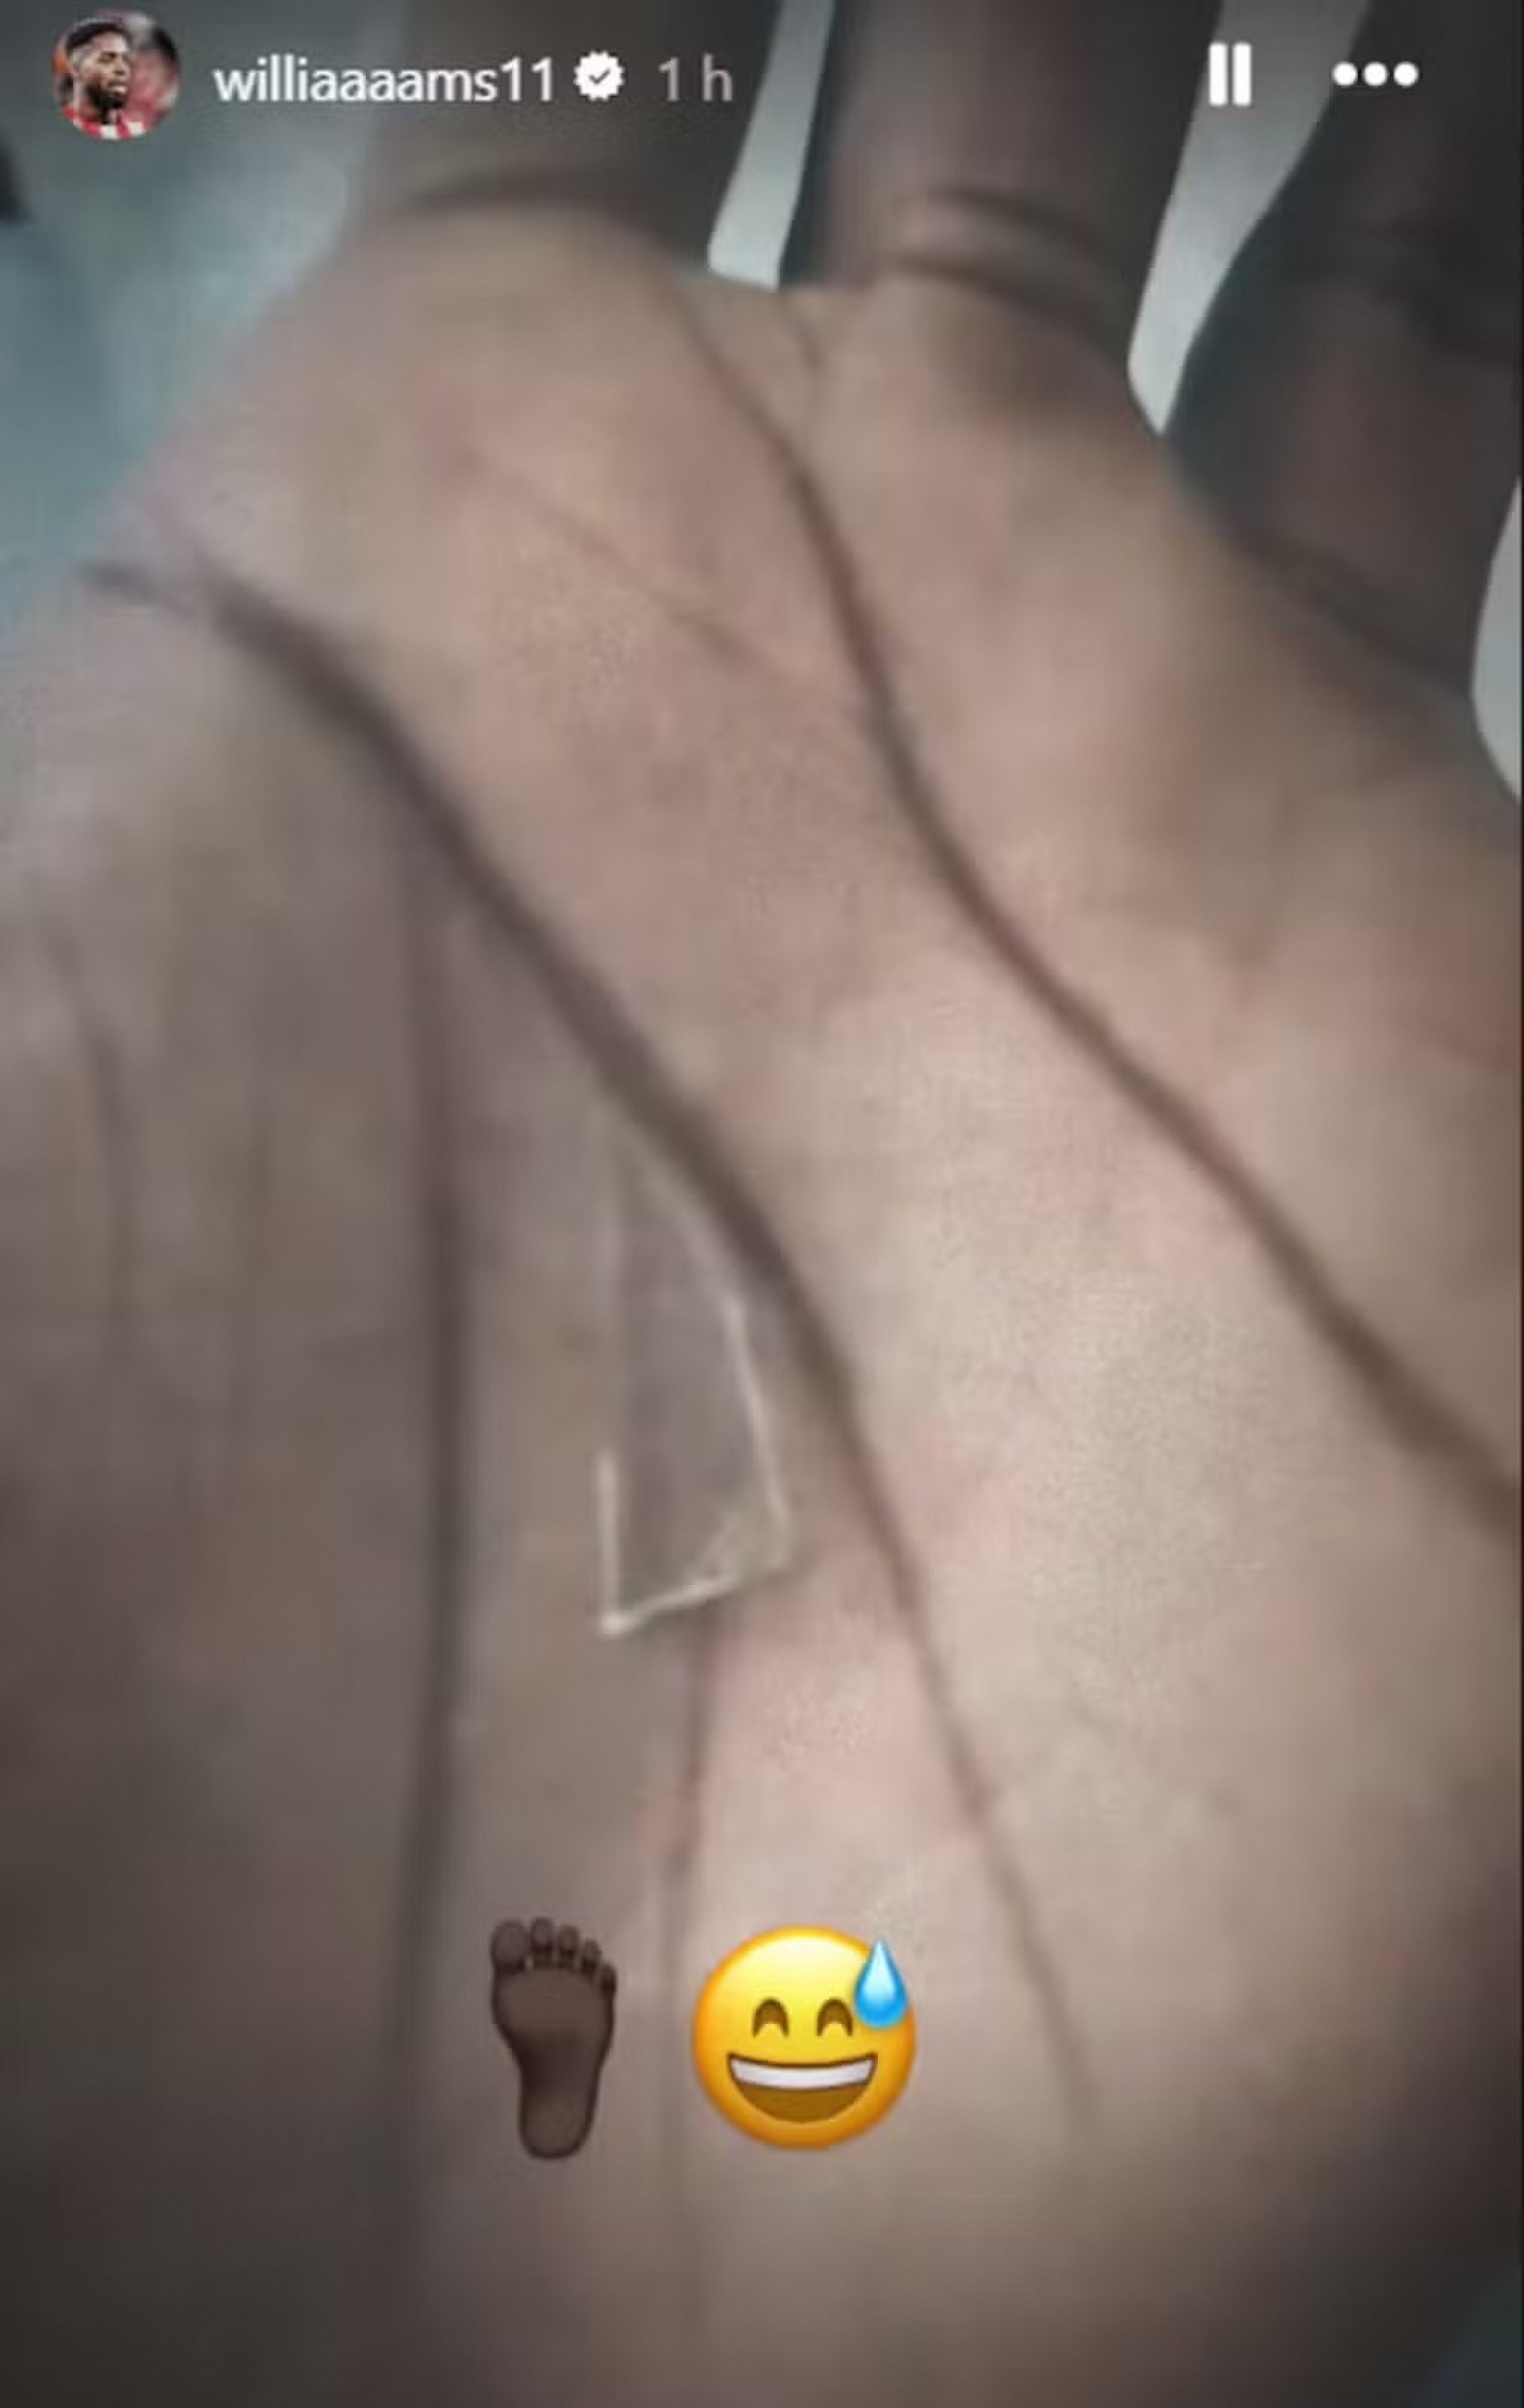 Nas redes sociais, Iñaki Williams publicou foto do pedaço de vidro que estava em seu pé - Reprodução / Instagram